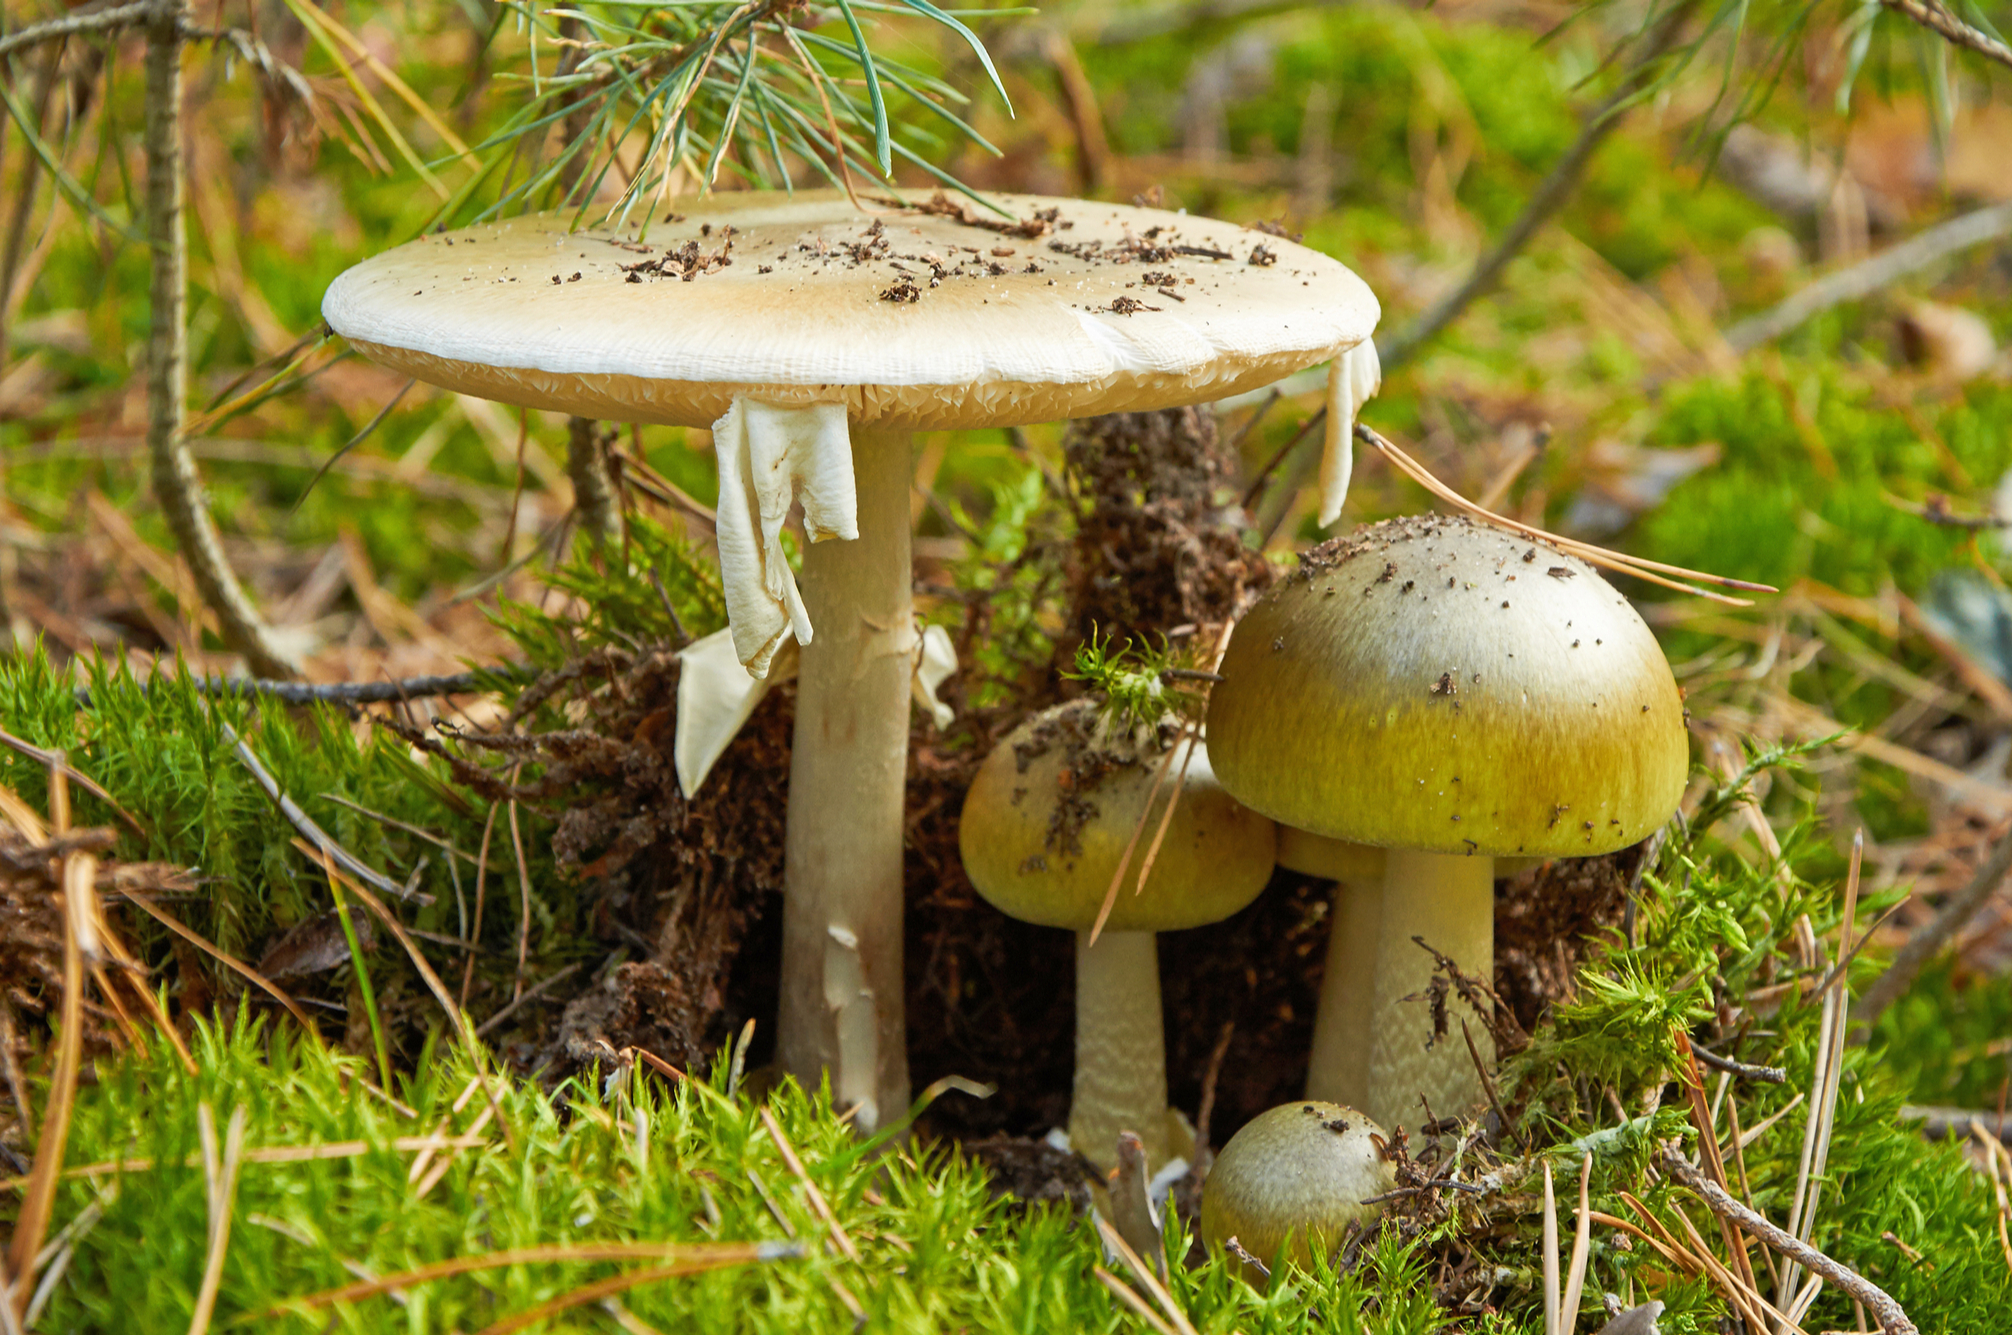 Pourquoi certains champignons sont-ils toxiques ?